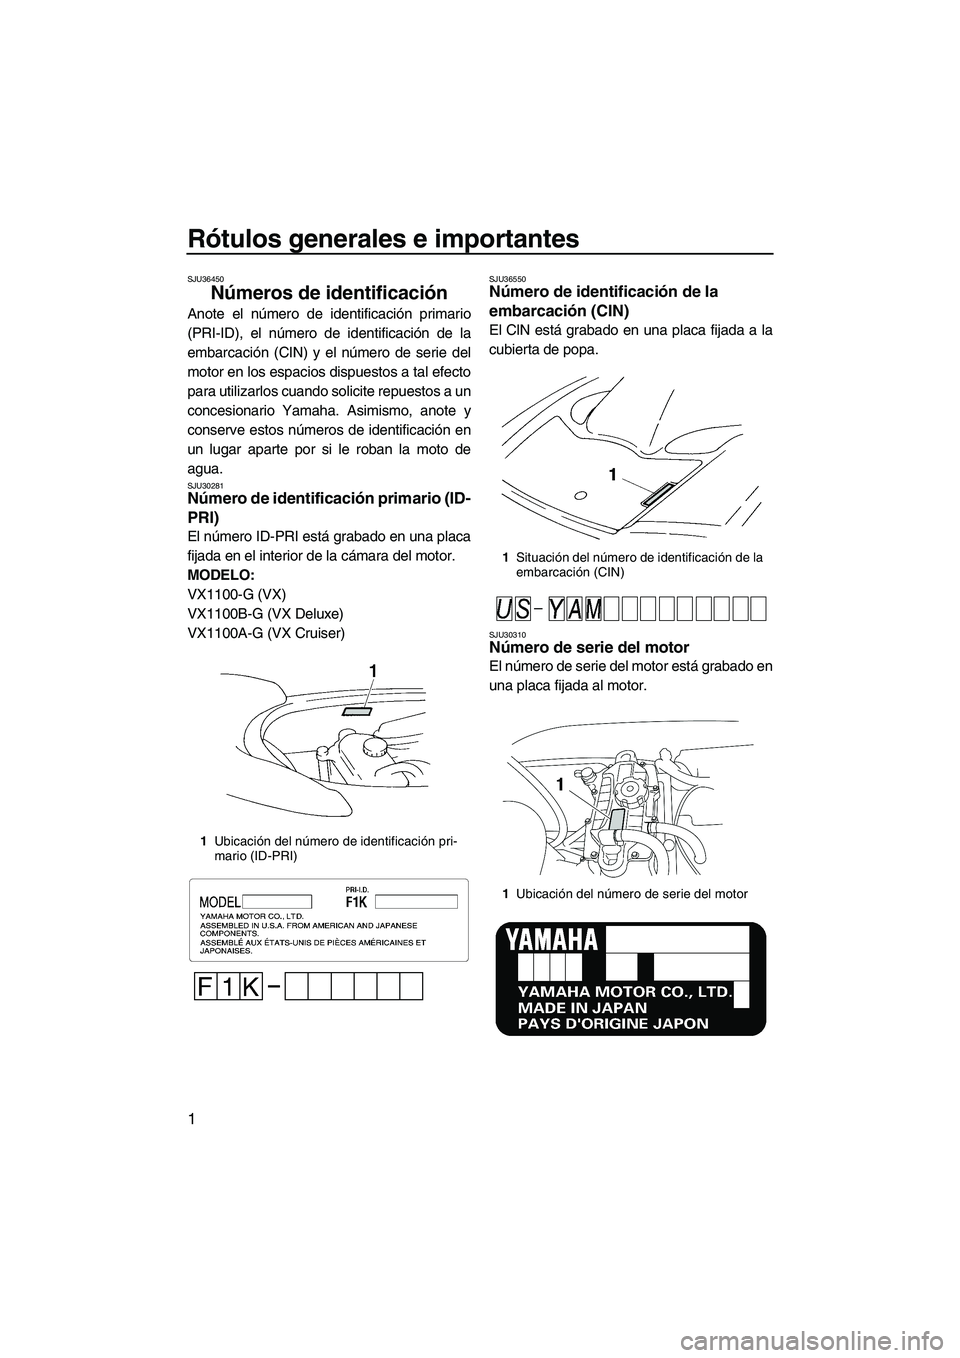 YAMAHA VX 2008  Manuale de Empleo (in Spanish) Rótulos generales e importantes
1
SJU36450
Números de identificación 
Anote el número de identificación primario
(PRI-ID), el número de identificación de la
embarcación (CIN) y el número de s